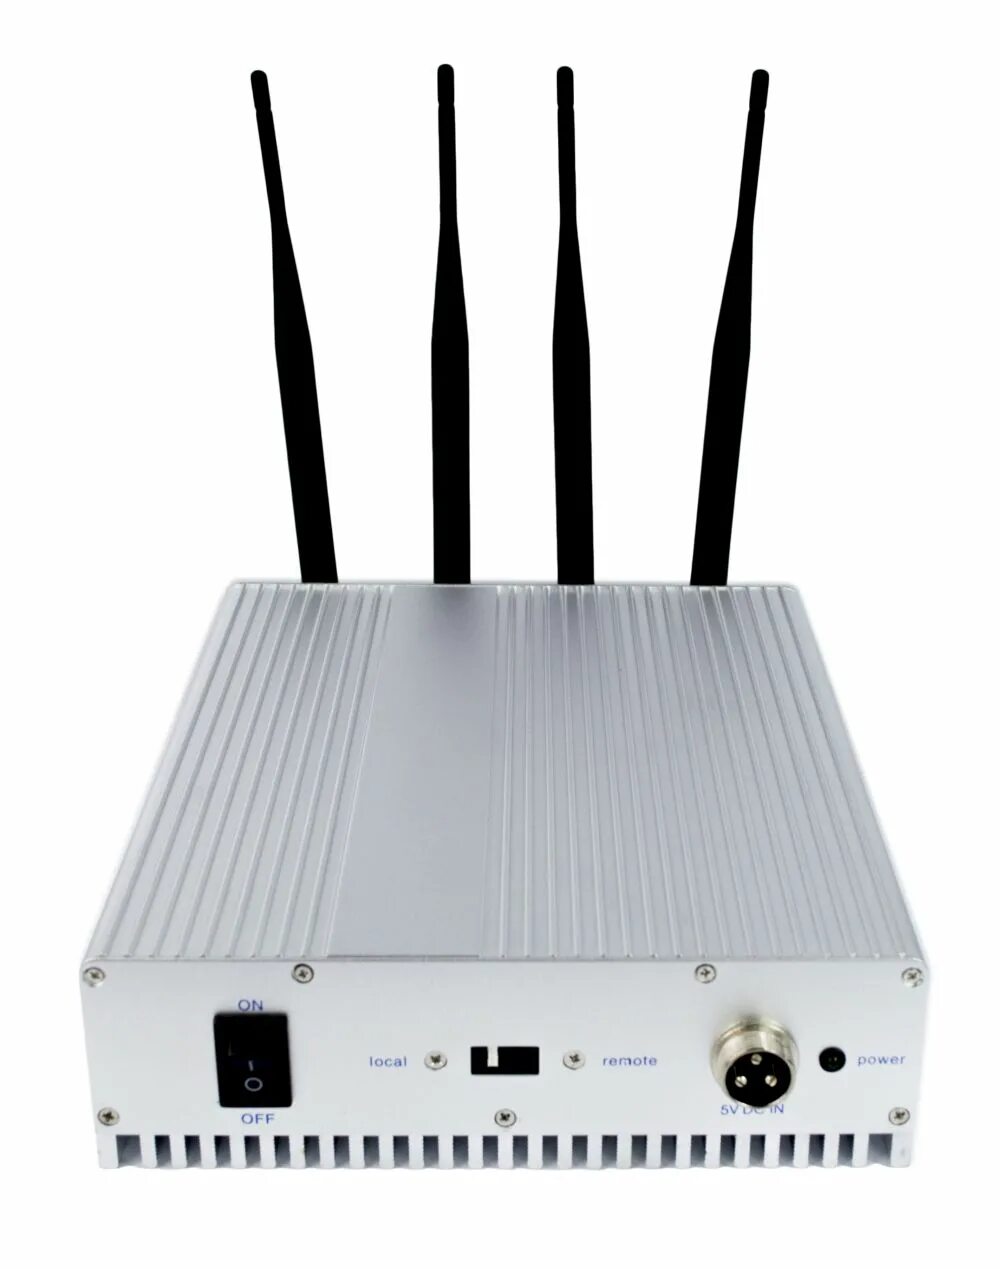 Gsm 900 3g. Подавитель GSM сигнала Аллигатор. Подавитель Аллигатор 25+4g LTE. Подавитель радиосигналов Аллигатор 40 (4g+LTE+рации). GSM Gate model g-4 GSM 900/1800.